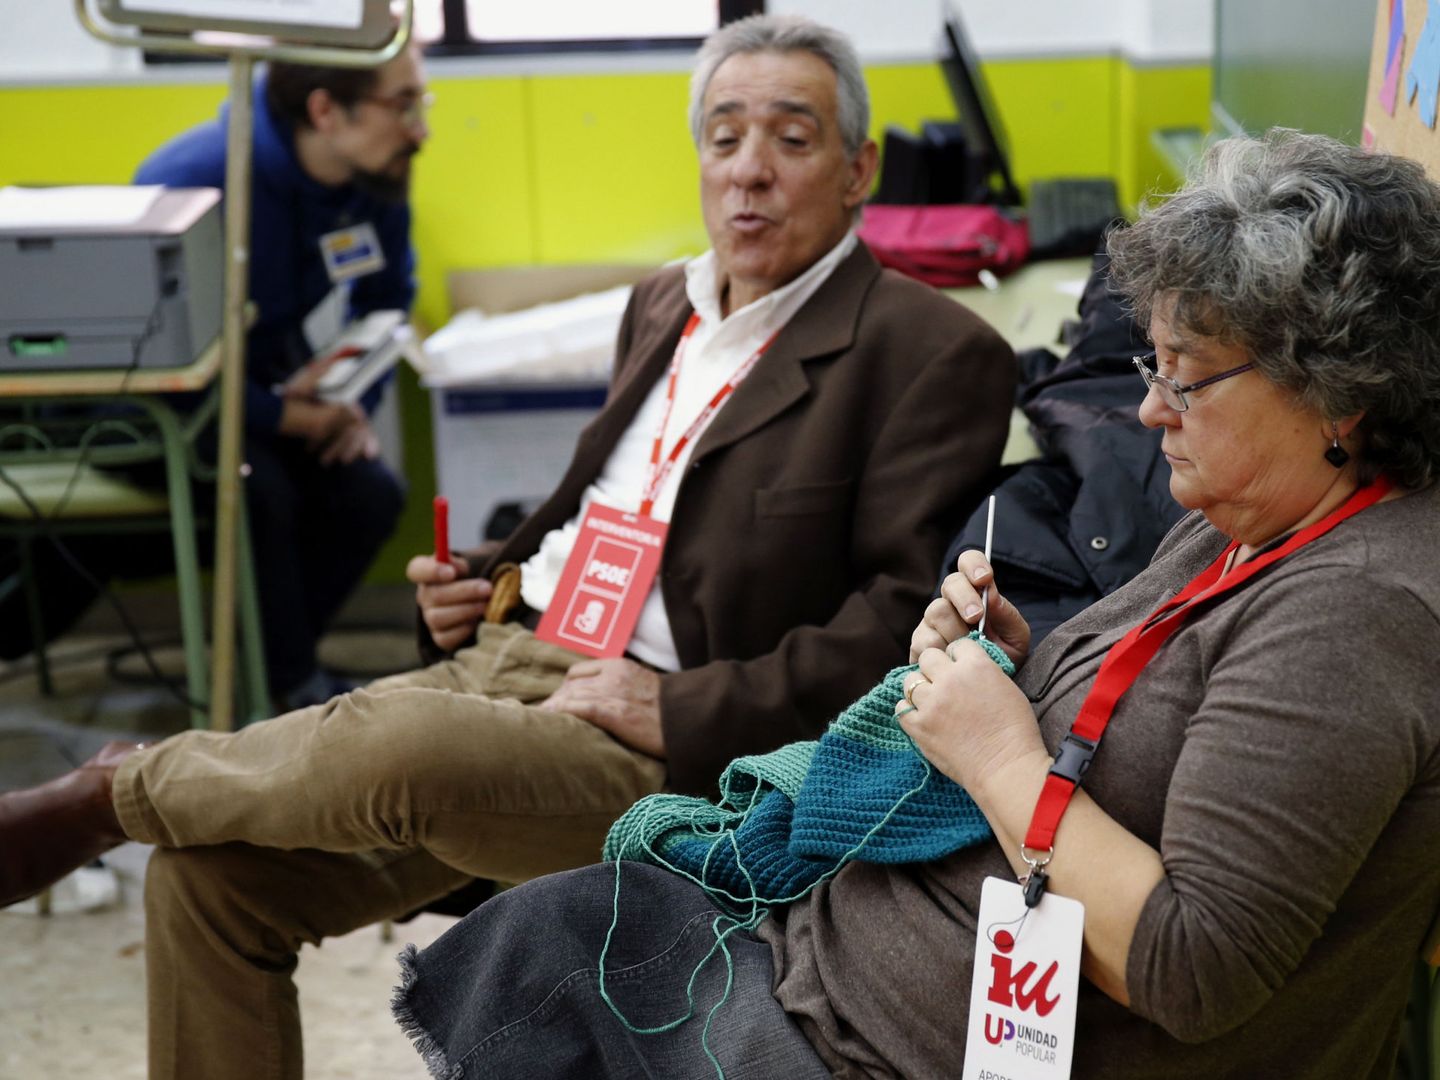 Dos interventores durante las elecciones generales de 2015 en España. (Efe)